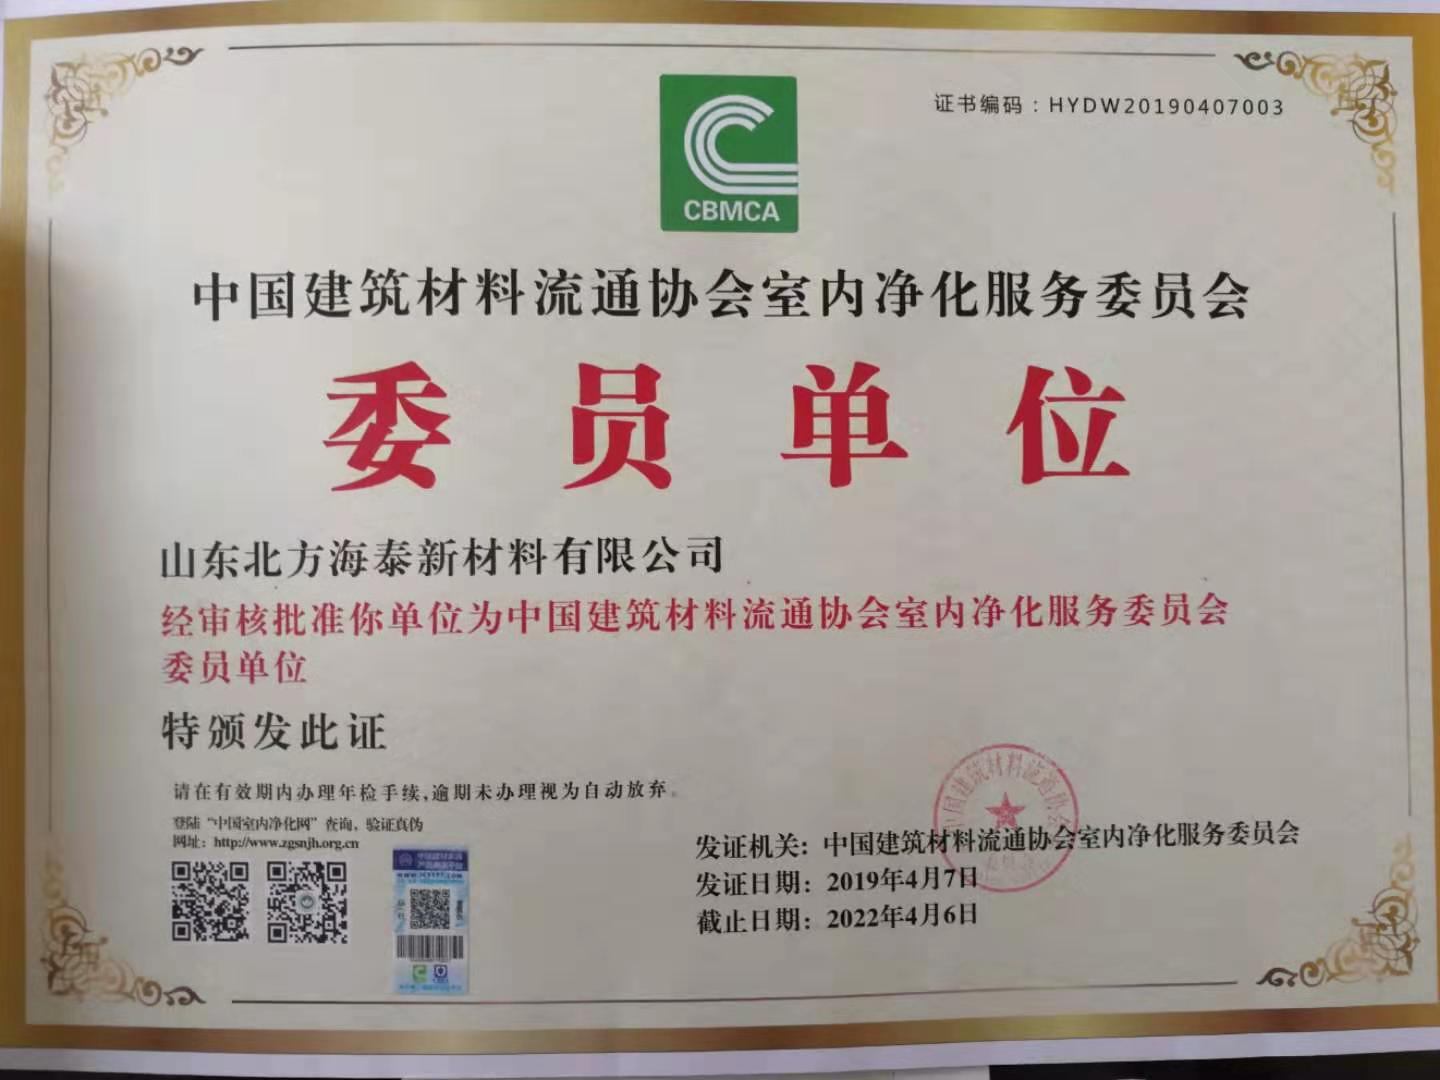 公司成为中国建筑材料流通协会室内净化服务委员会的委员单位